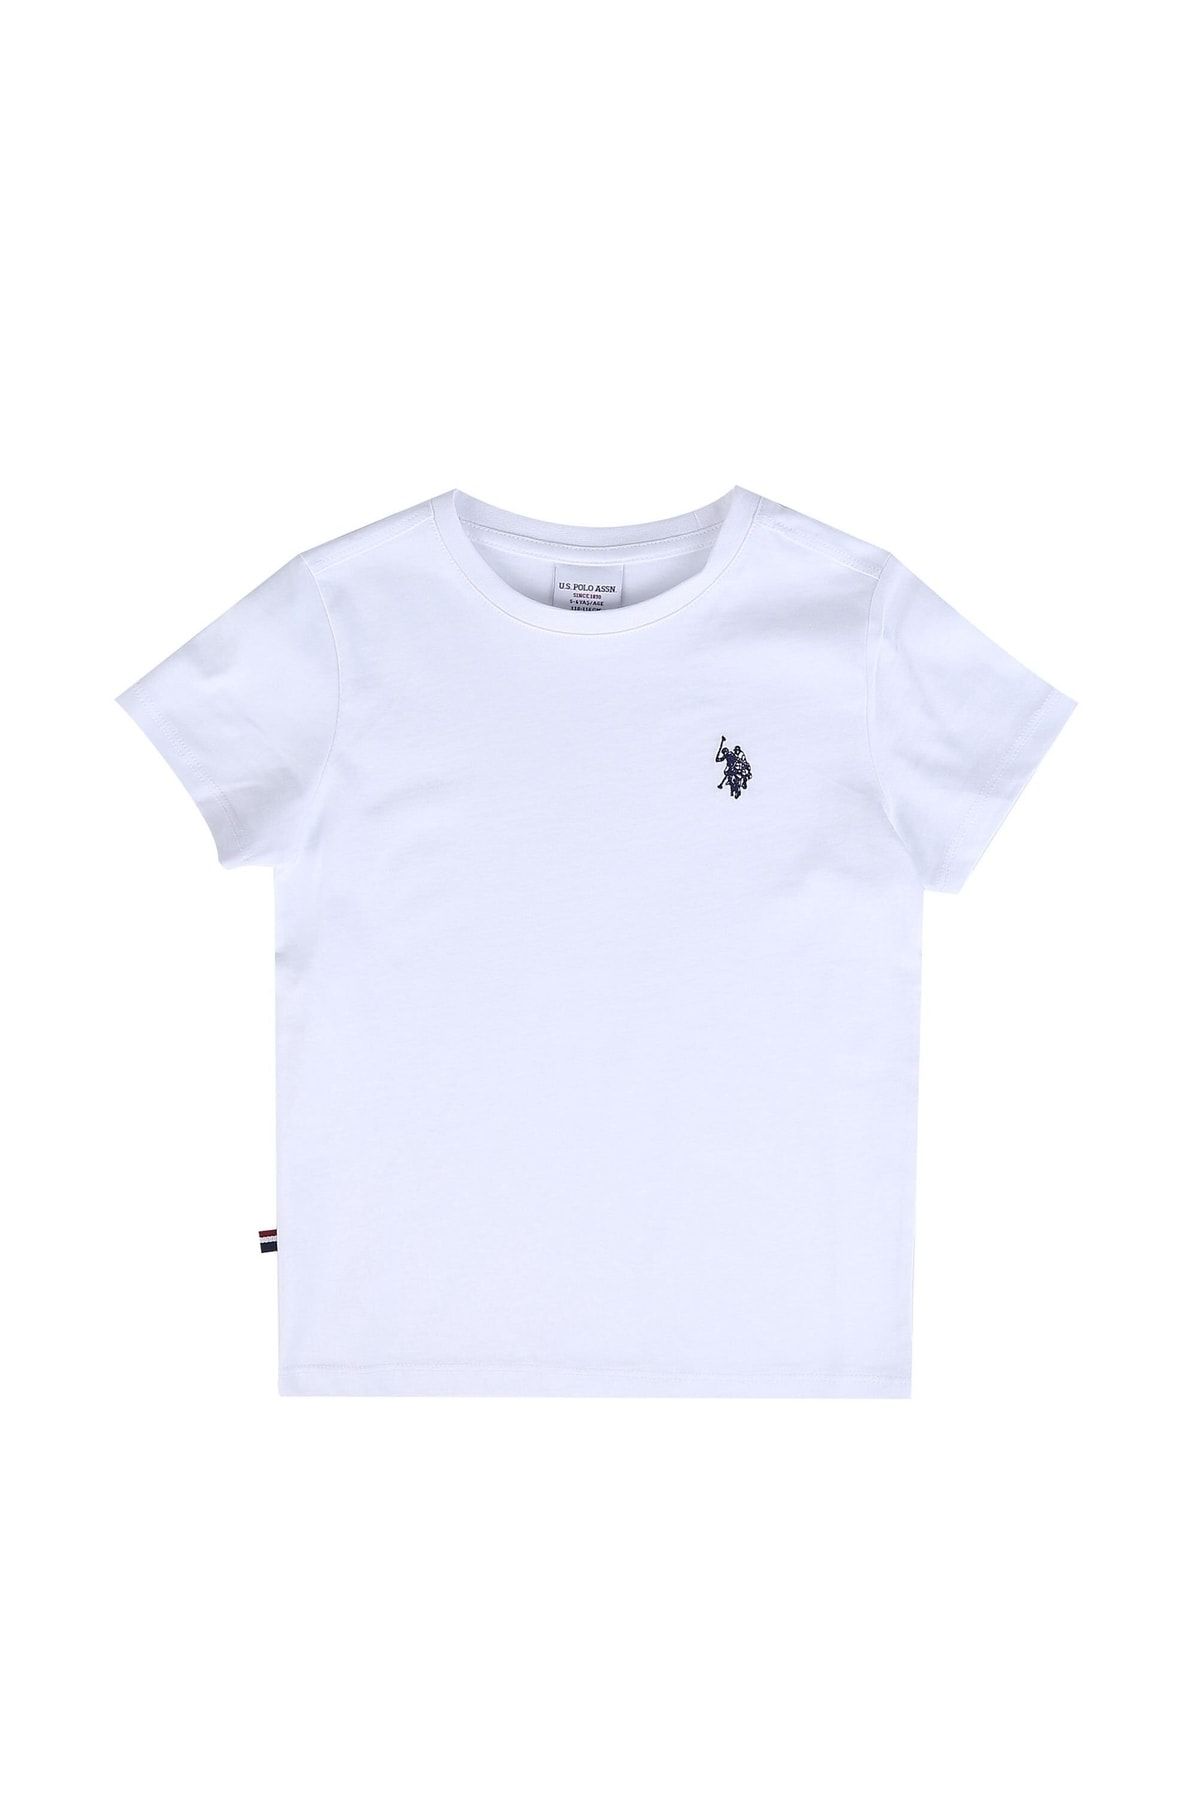 U.S. Polo Assn. Erkek Çocuk Basic T-shirt